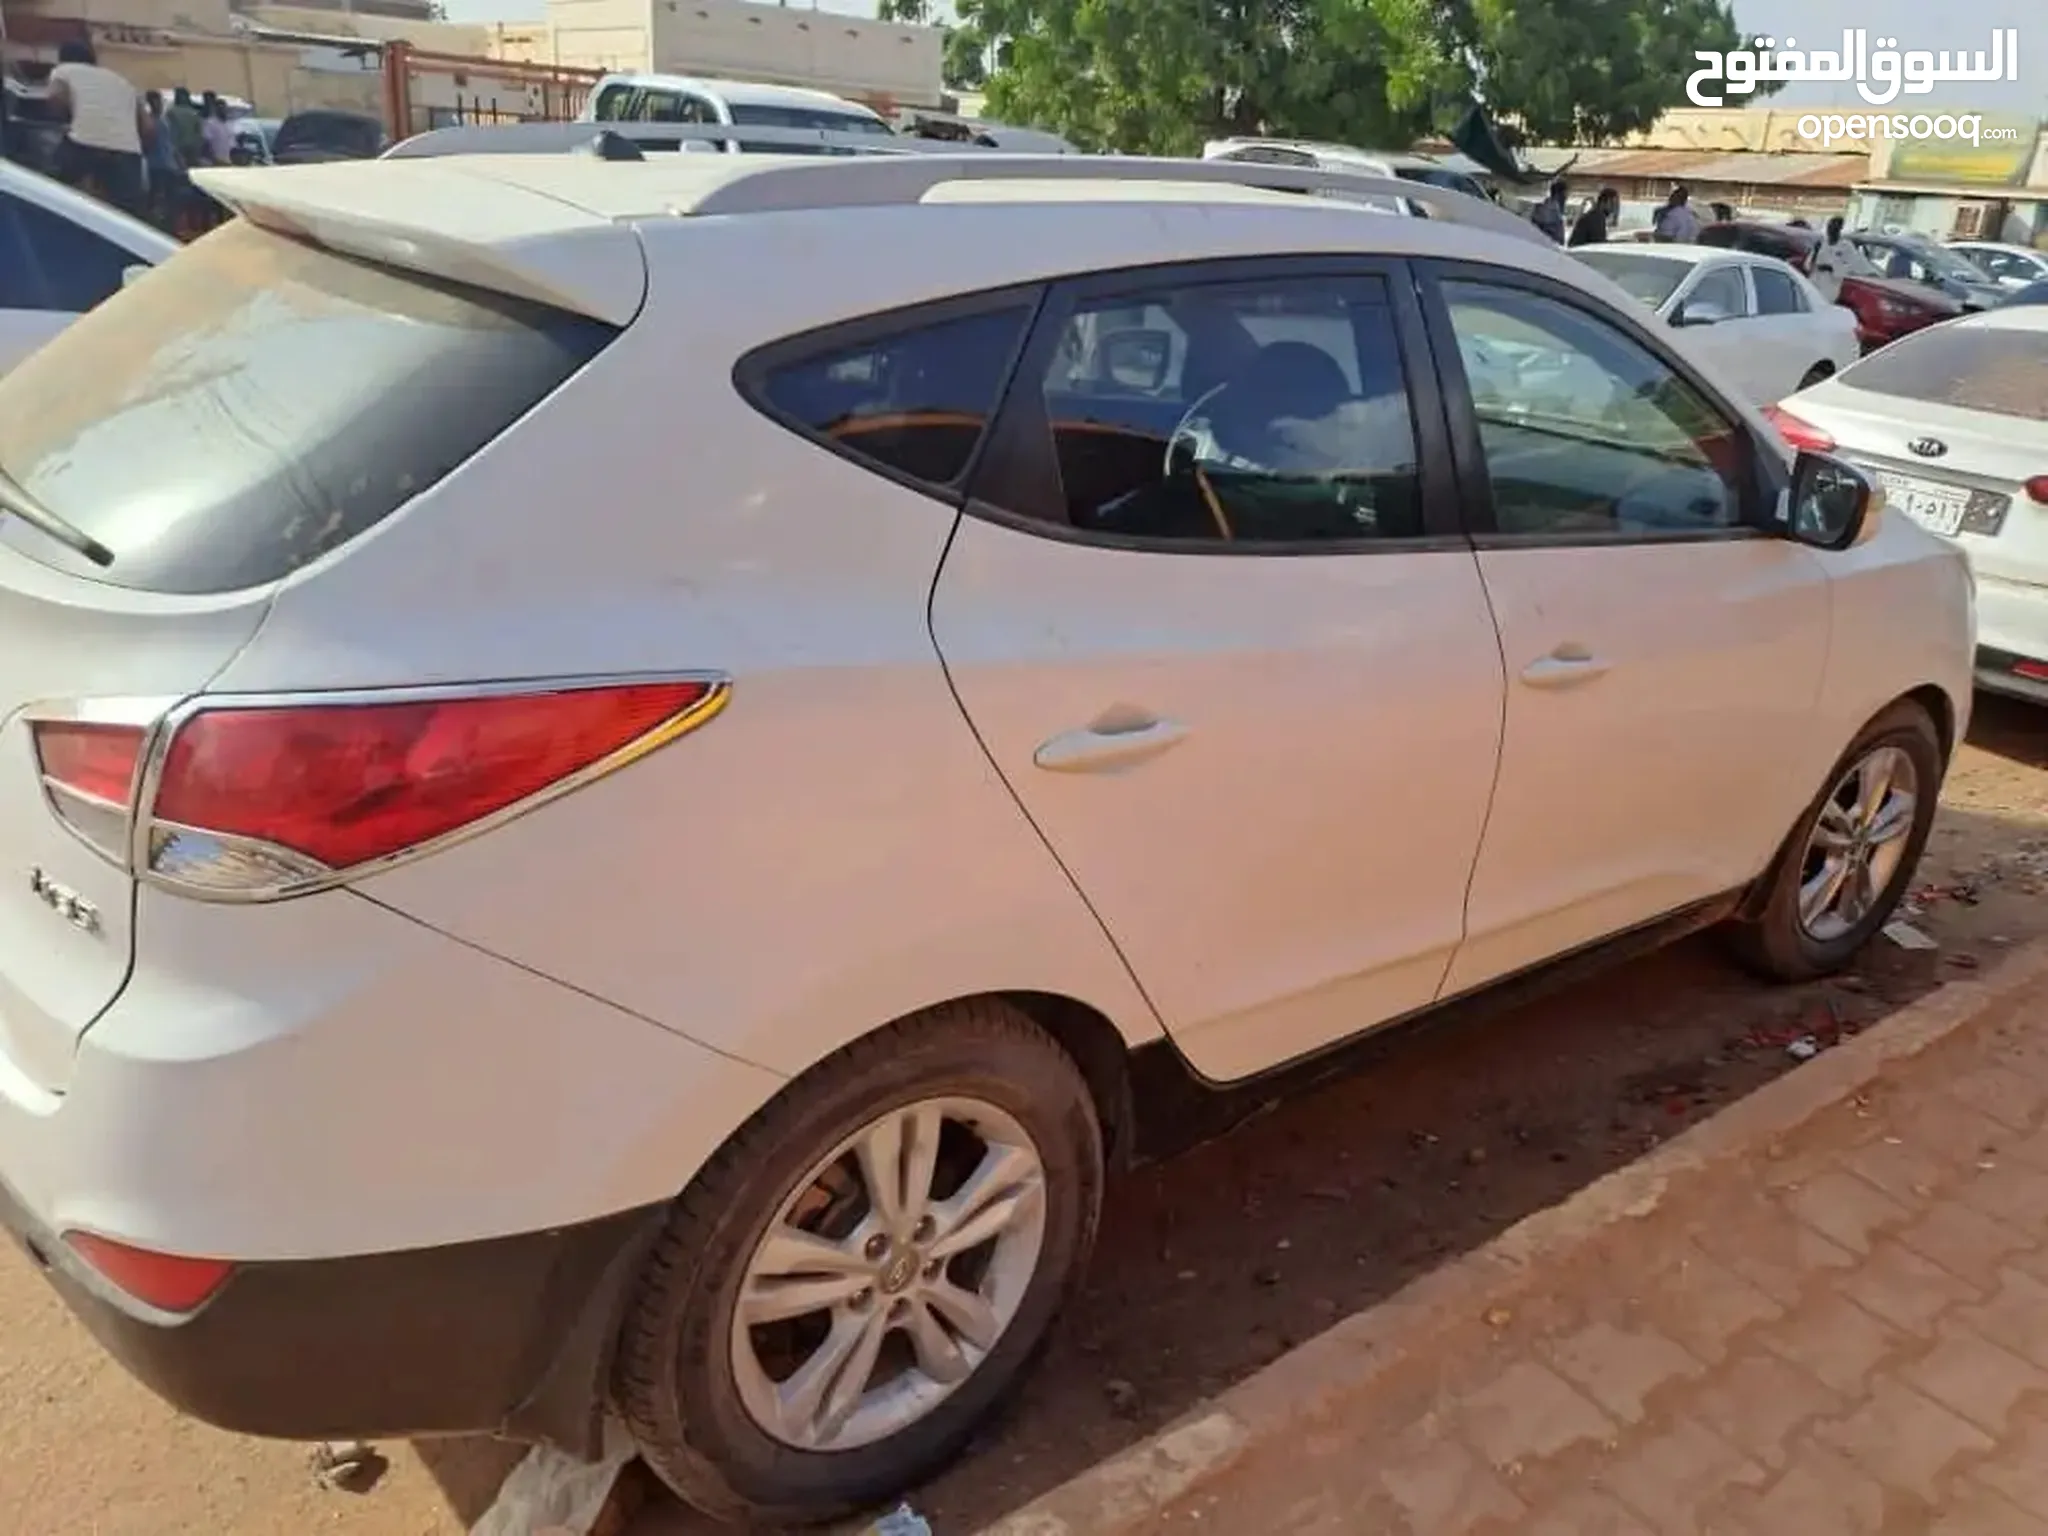 سيارات للبيع مستعملة و جديدة للبيع في السودان | السوق المفتوح